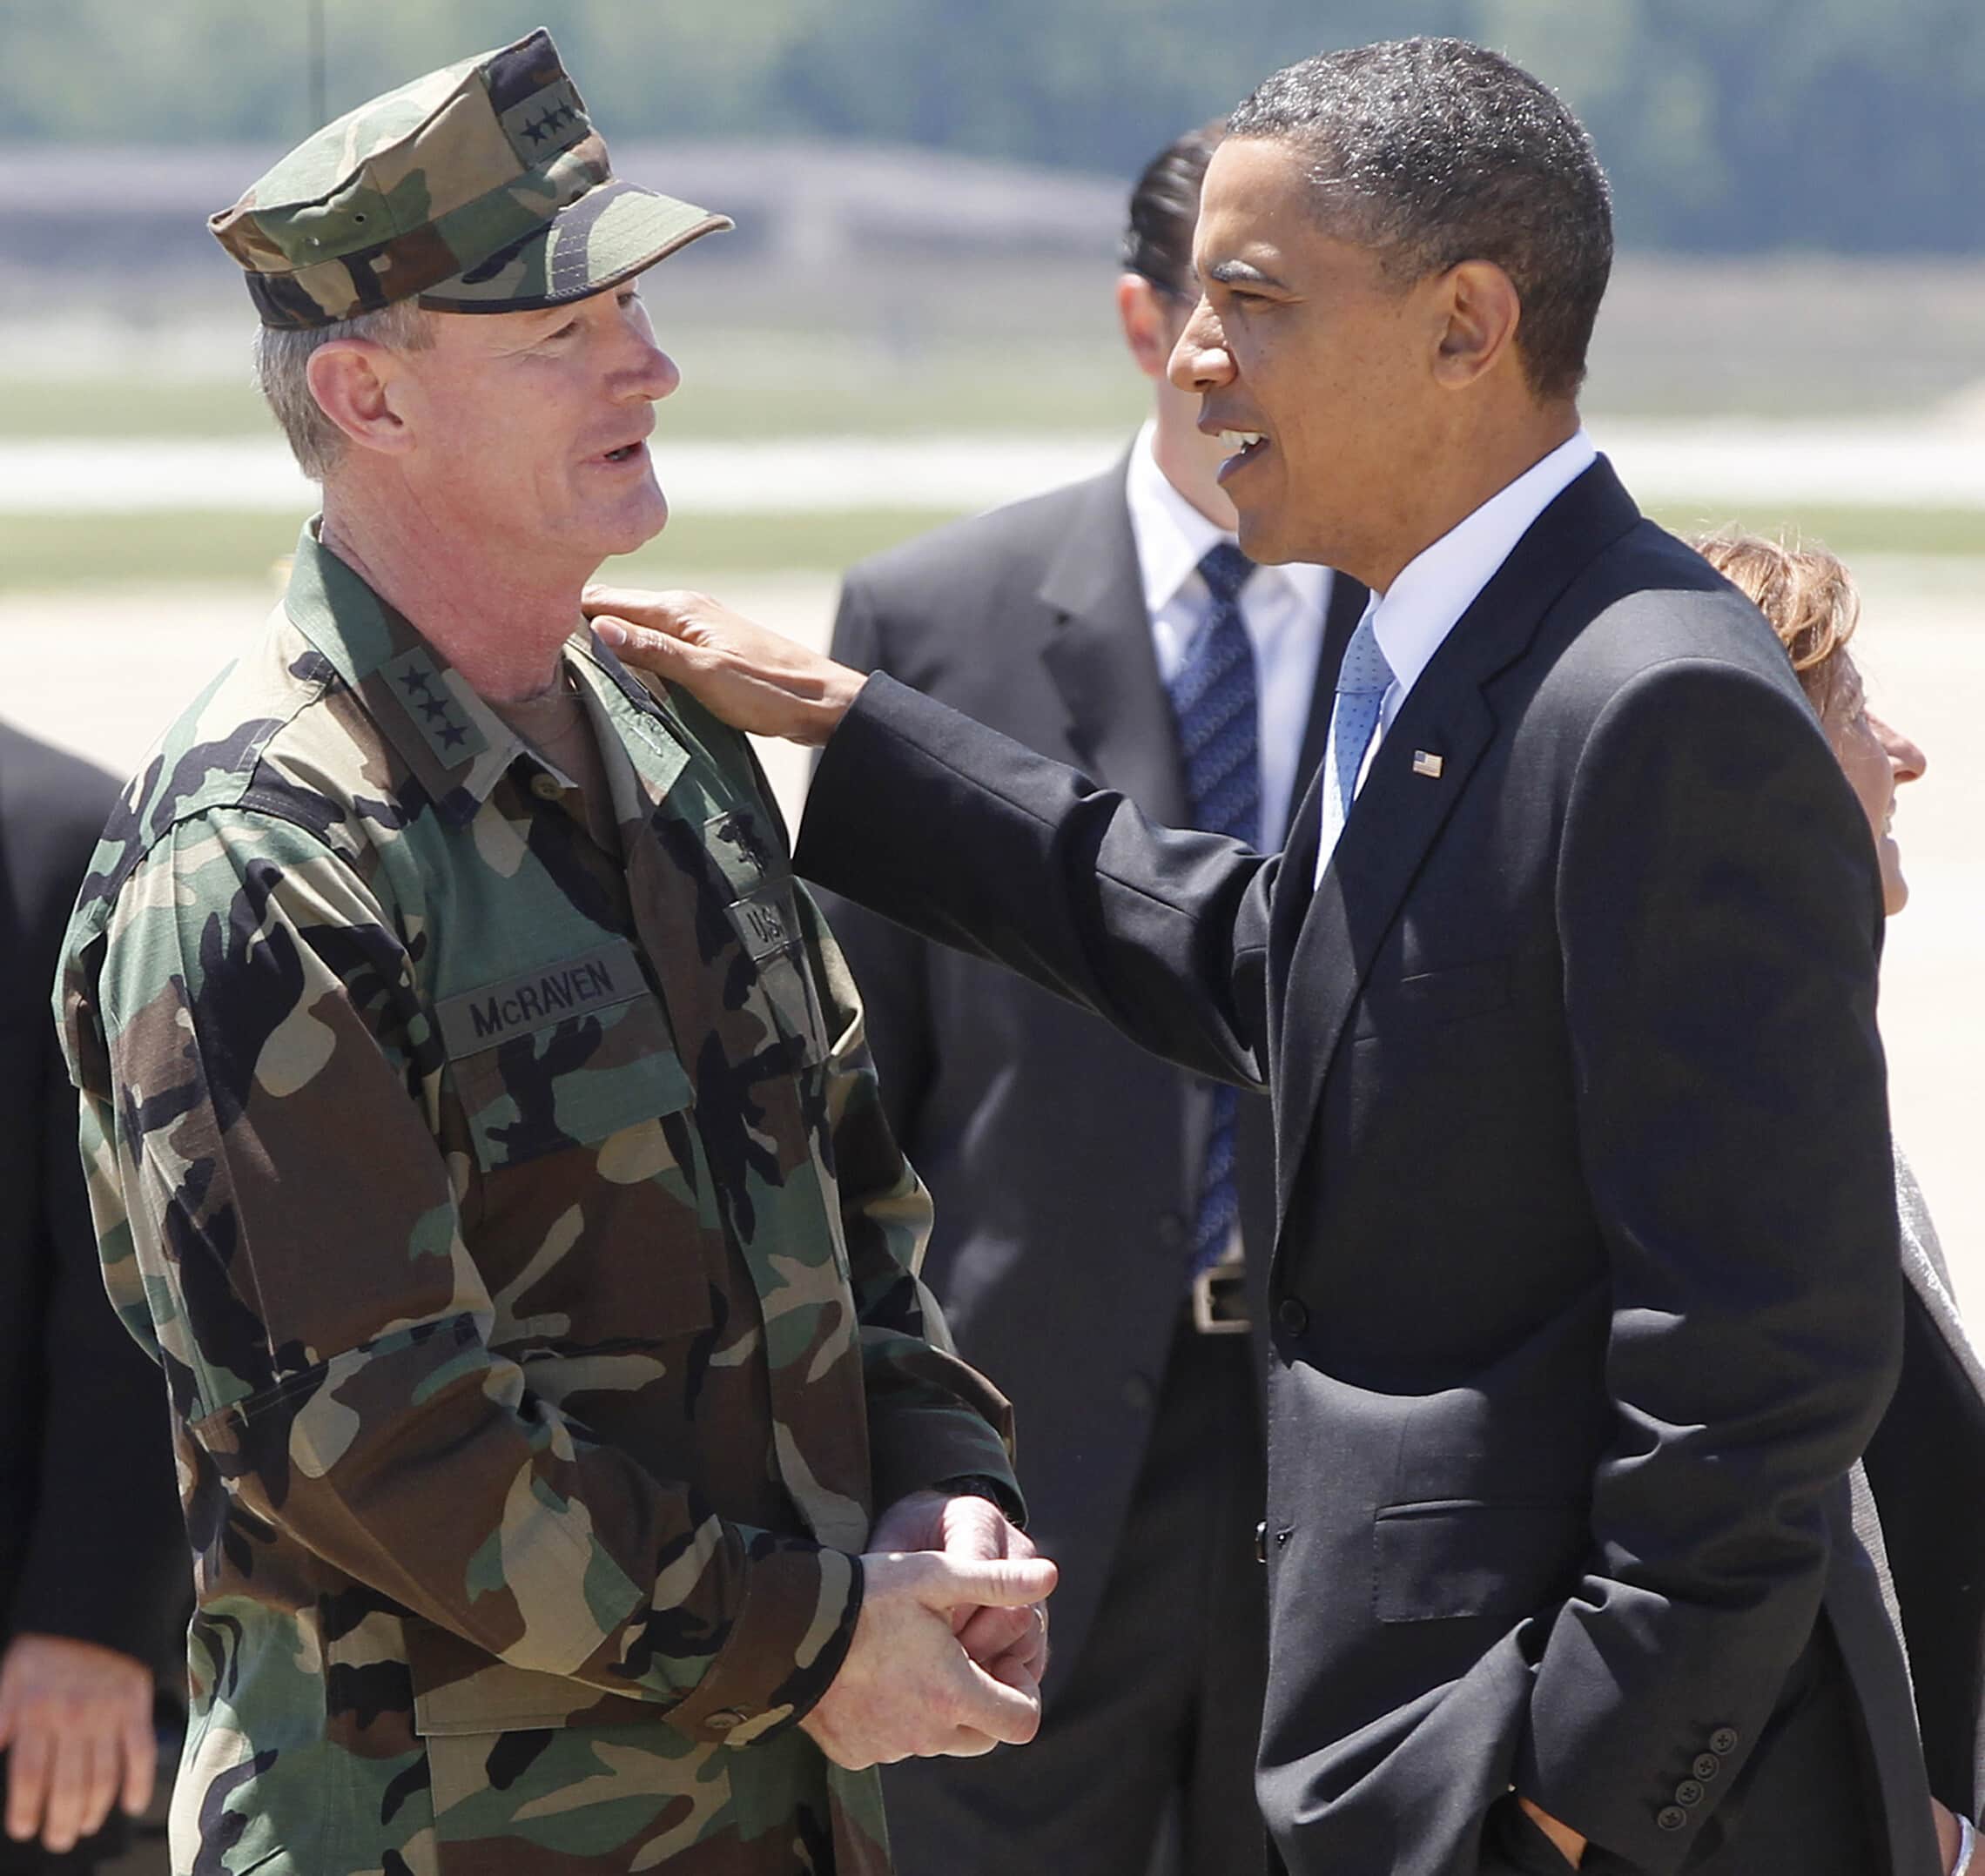 הנשיא ברק אובמה מקבל את פניו של האדמירל ויליאם מקרייבן בשדה התעופה הצבאי קמפבל עם חזרתו מהמבצע חיסול בן לאדן, 6 במאי 2011 (צילום: AP Photo/Charles Dharapak)